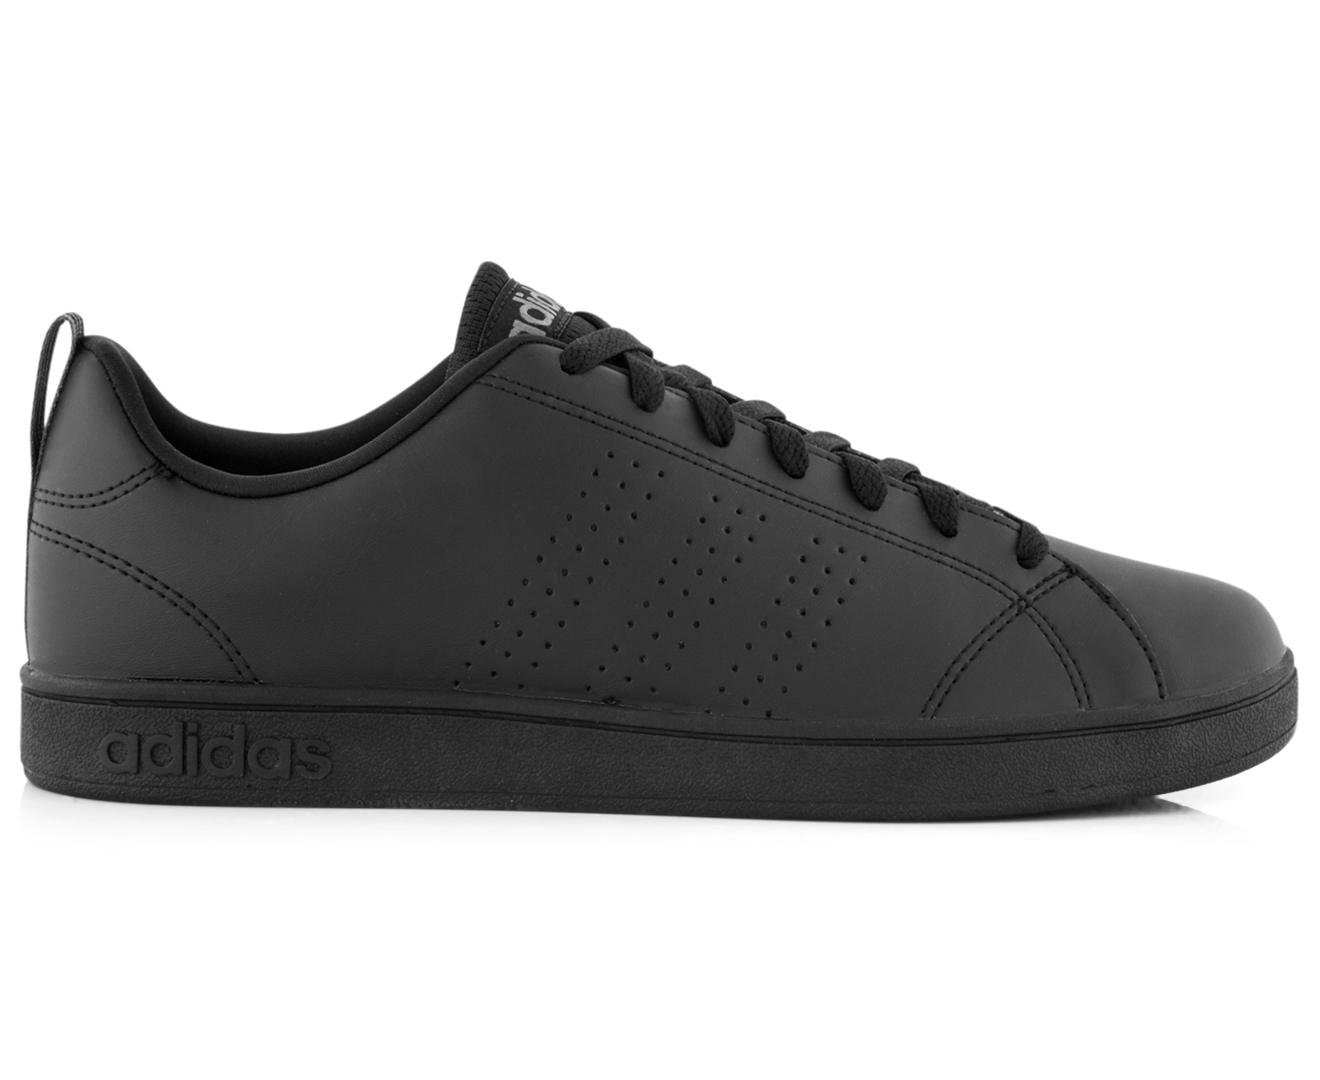 Adidas Men's Advantage Clean VS Shoe - Core Black/Lead | Catch.co.nz